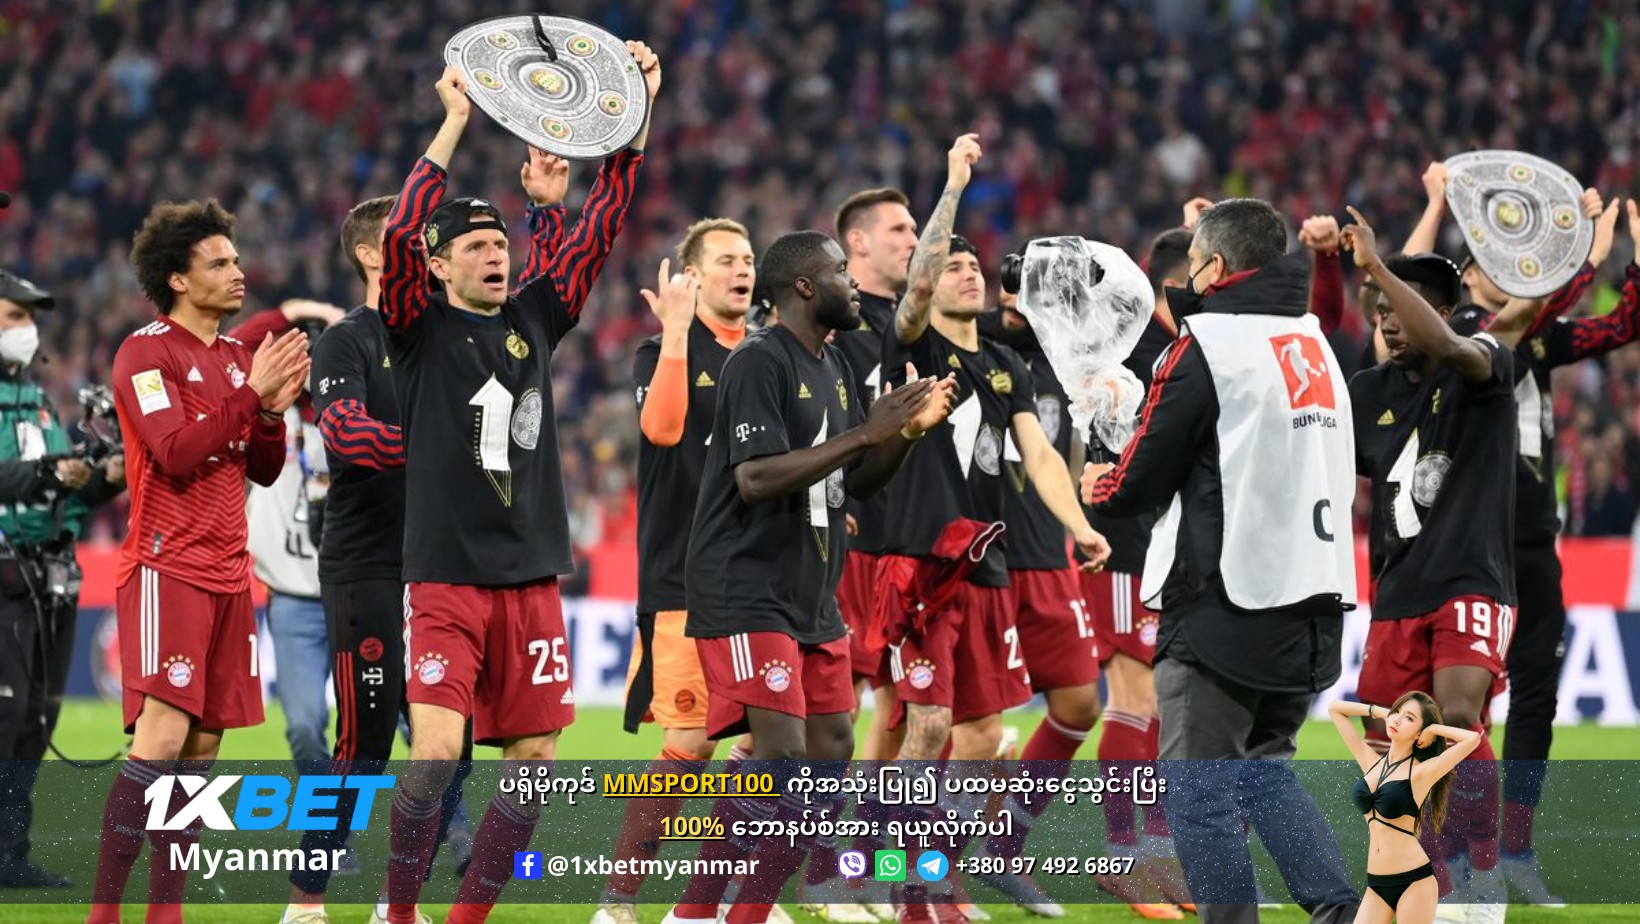 Bayen Munich are champions2022